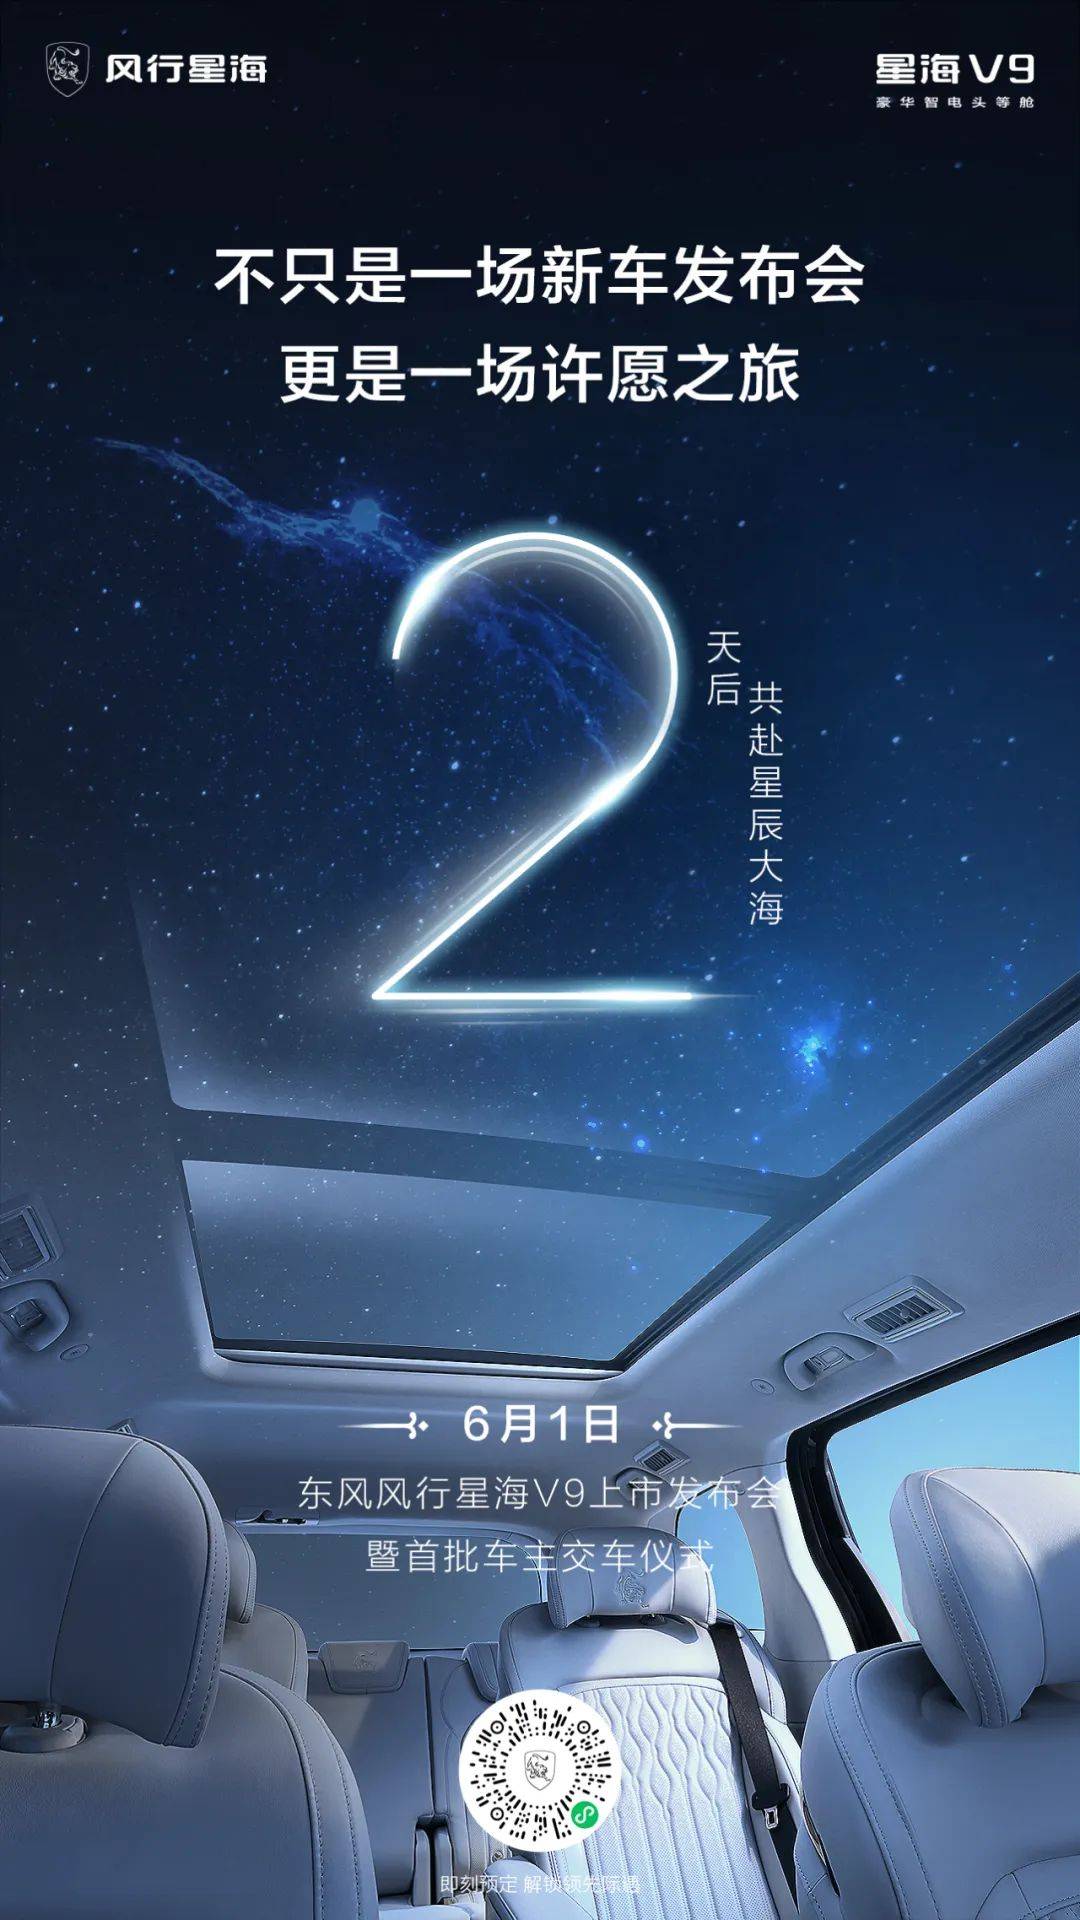 风行星海v9上市发布会暨首批车主交车仪式 倒计时2天!